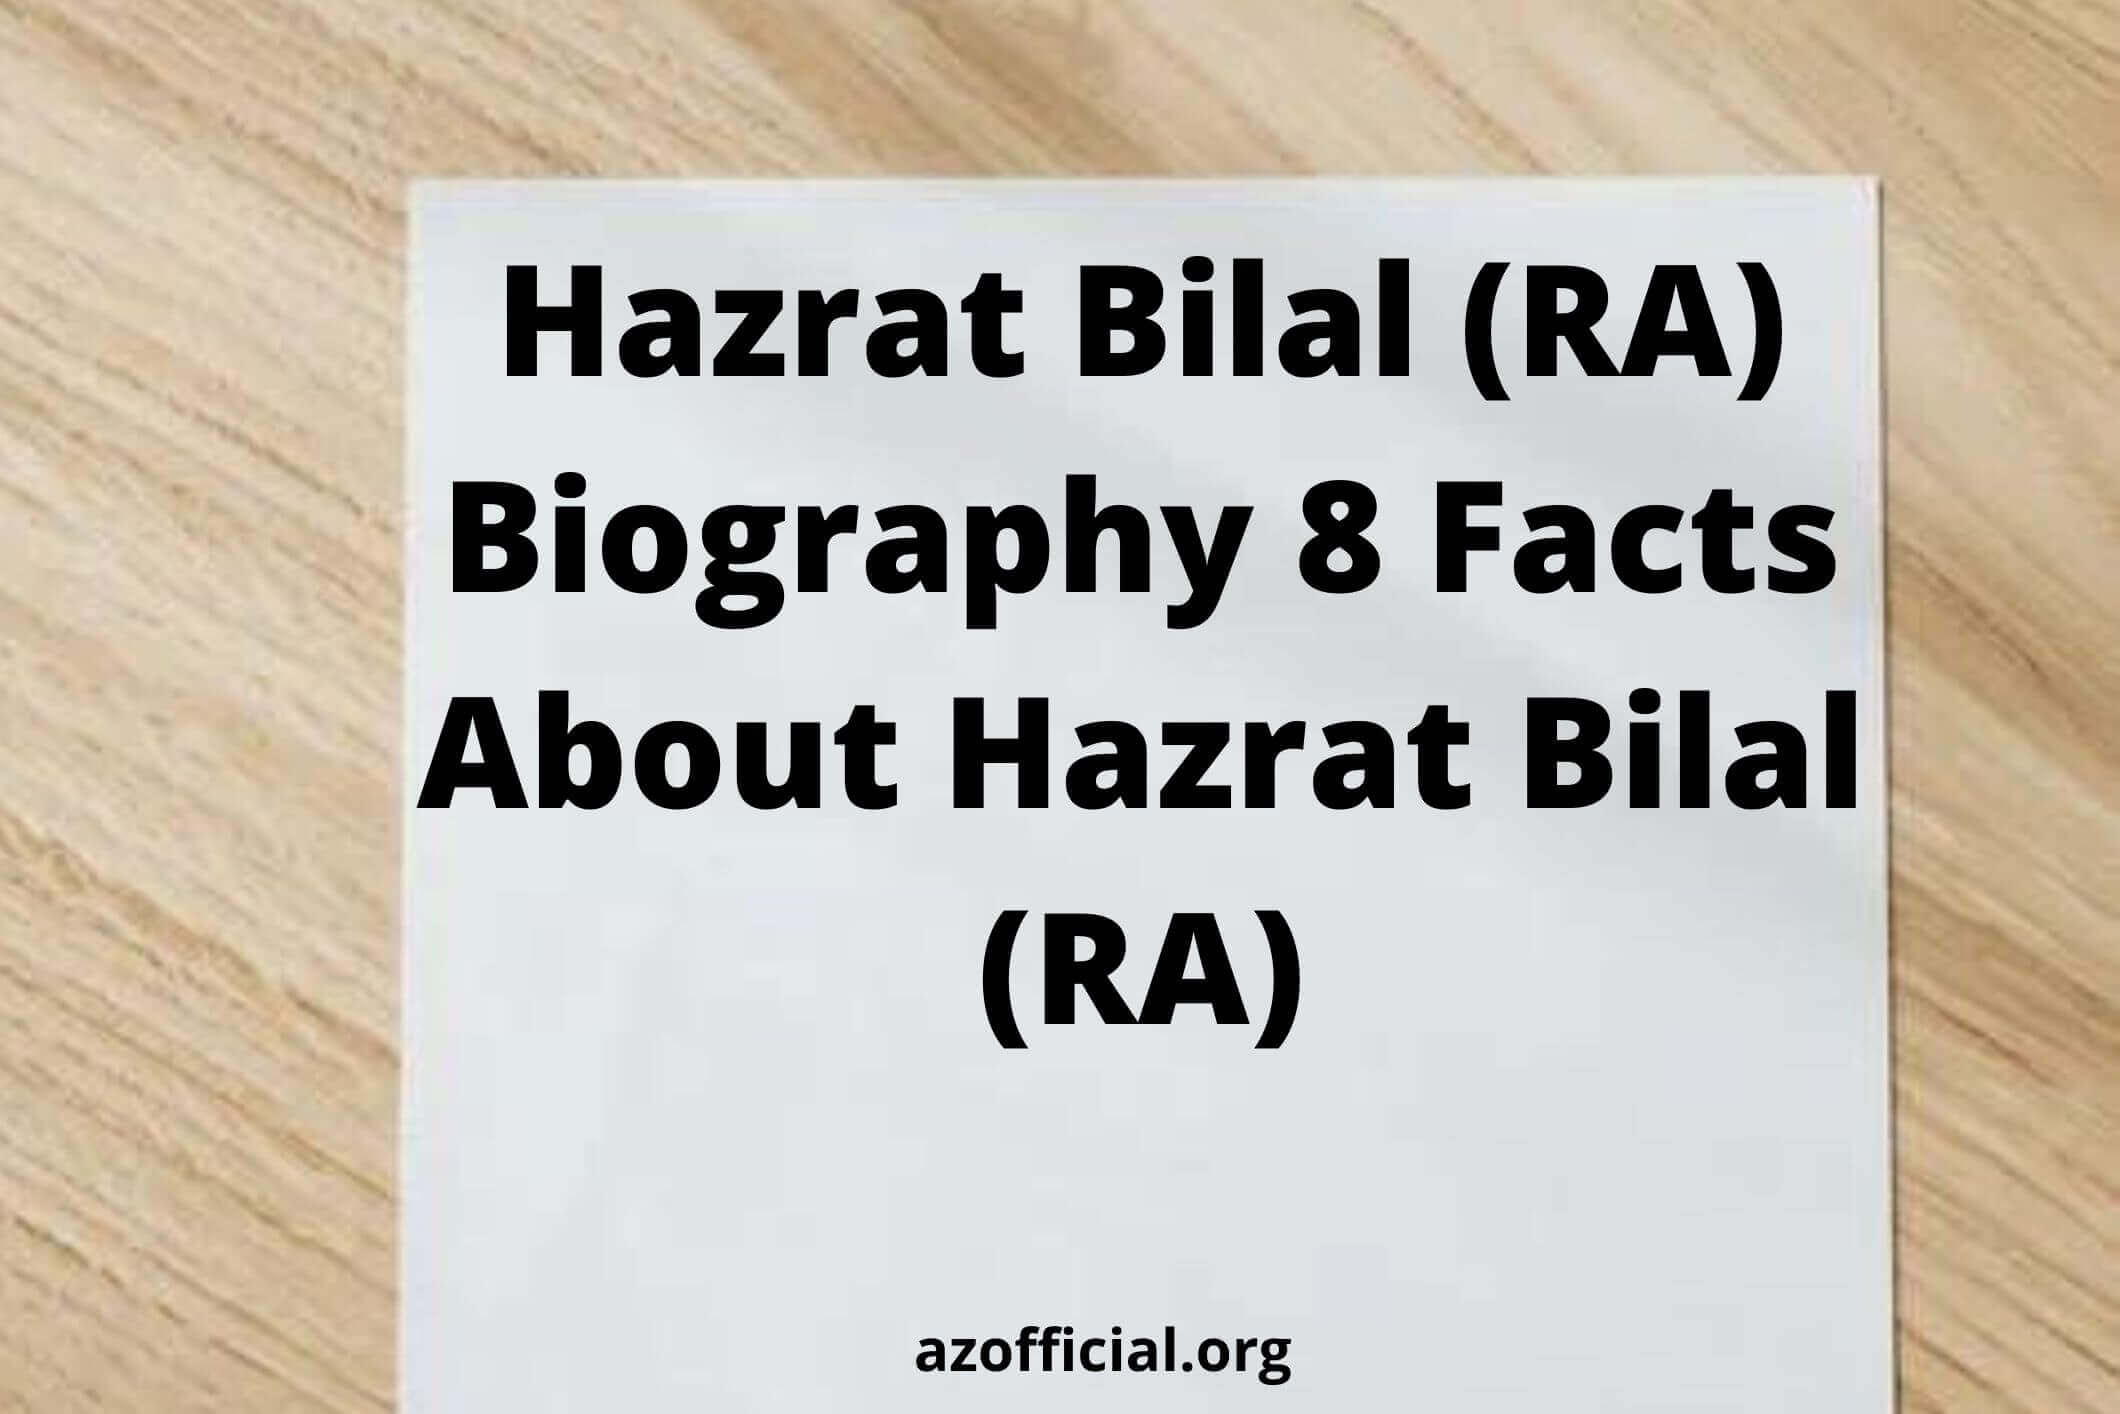 Hazrat Bilal (RA) Biography 8 Facts About Hazrat Bilal (RA)